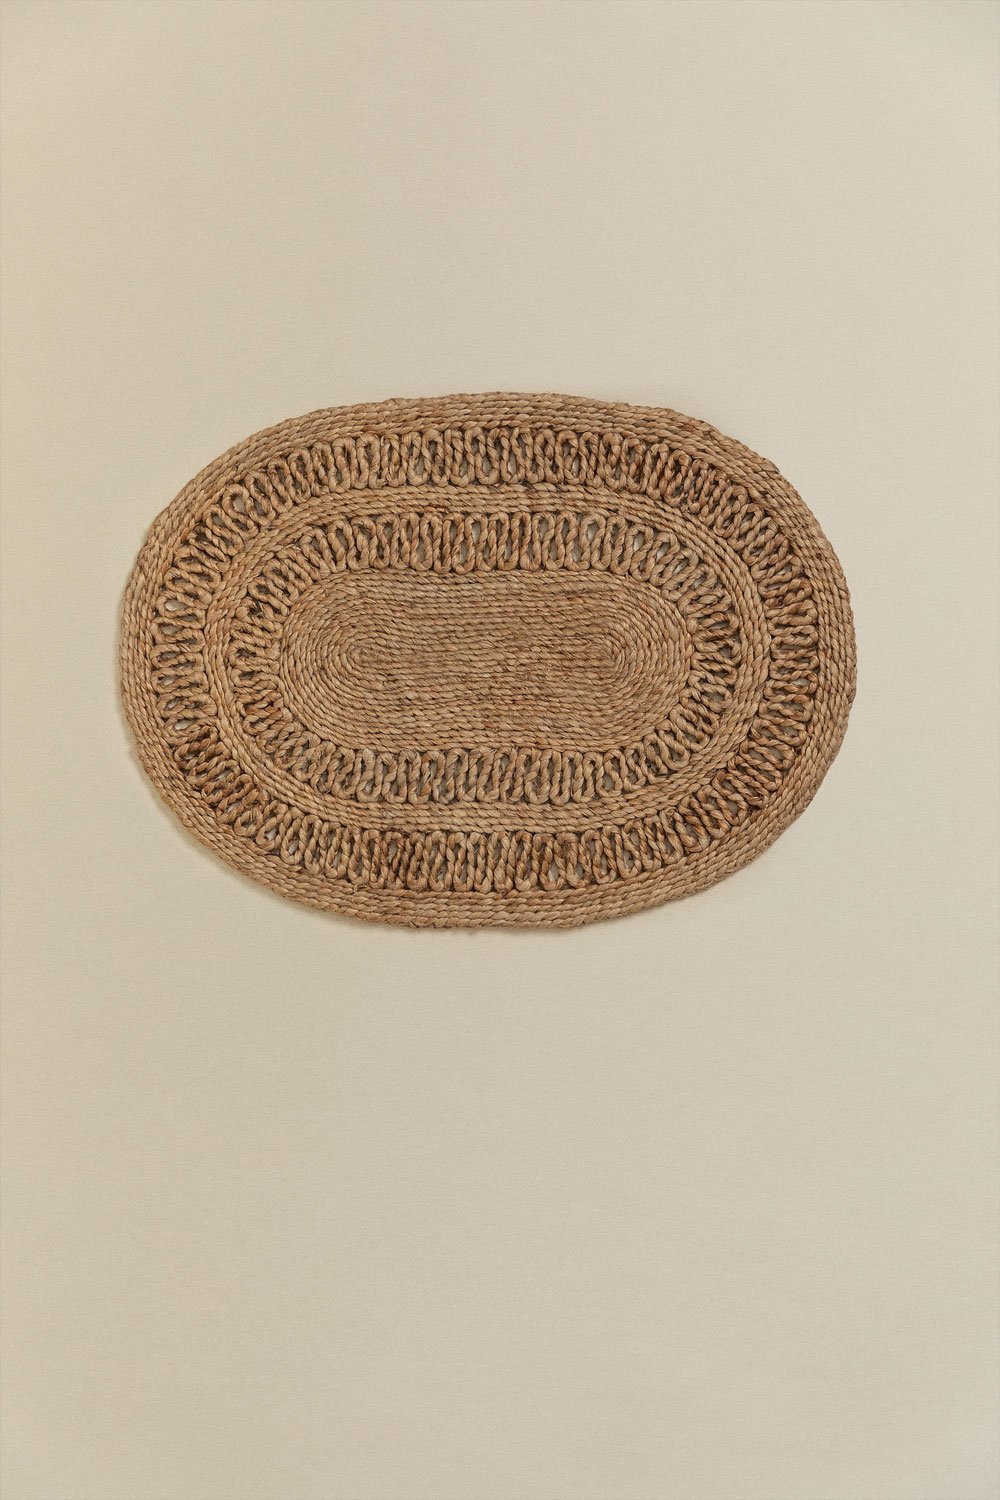 Wycieraczka owalna z juty (62,5x44 cm) Koblet, obrazek w galerii 2